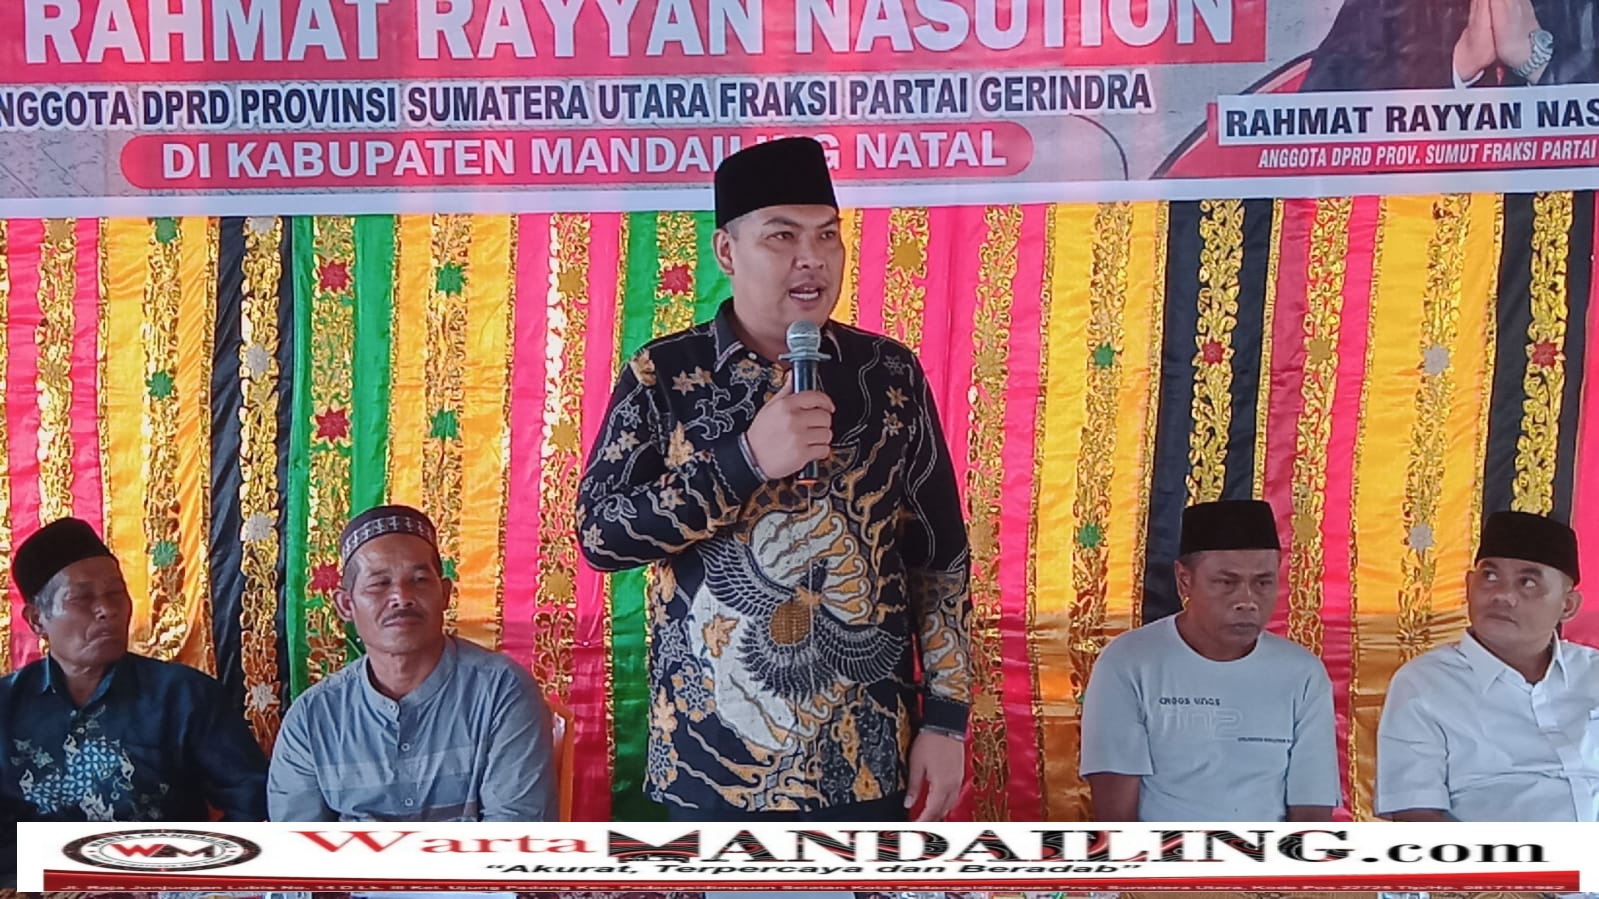 Rahmat Rayyan Nasution Anggota DPRD Sumatera Utara dari Fraksi Partai Gerindra sosialisasikan Peraturan Perundang Undangan Rancangan Peraturan Daerah (Ranperda) di Desa Sibanggor Julu. fhoto : Warta Mandailing.